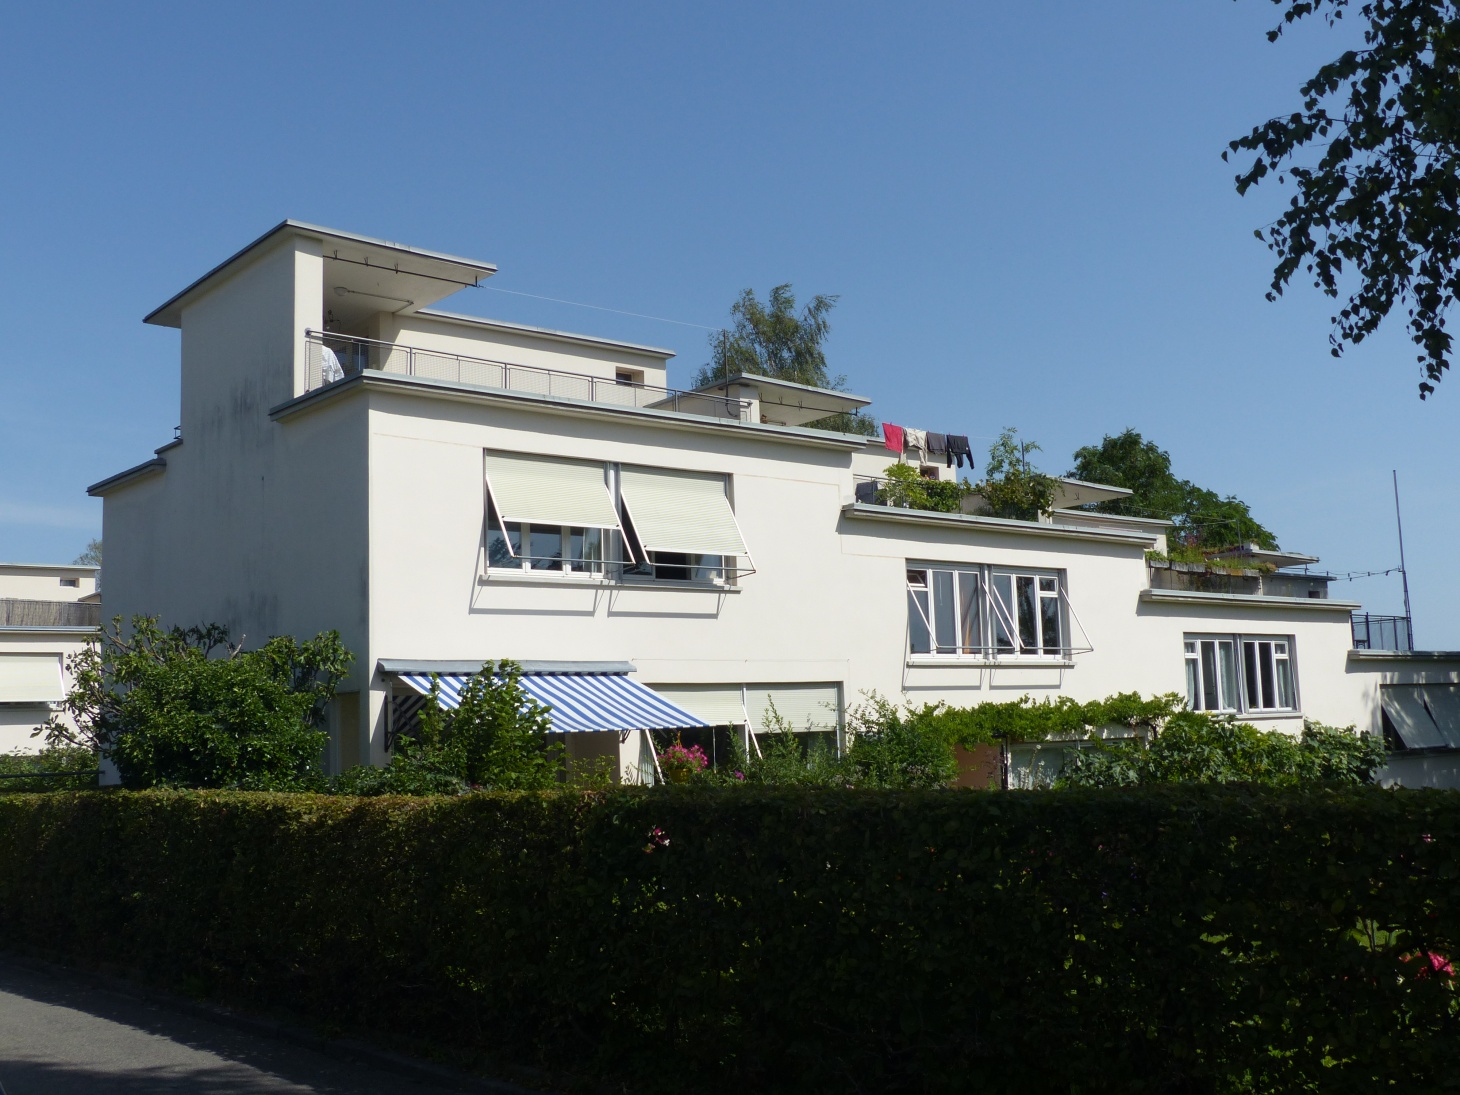 Siedlung Neubühl, Zürich-Wollishofen